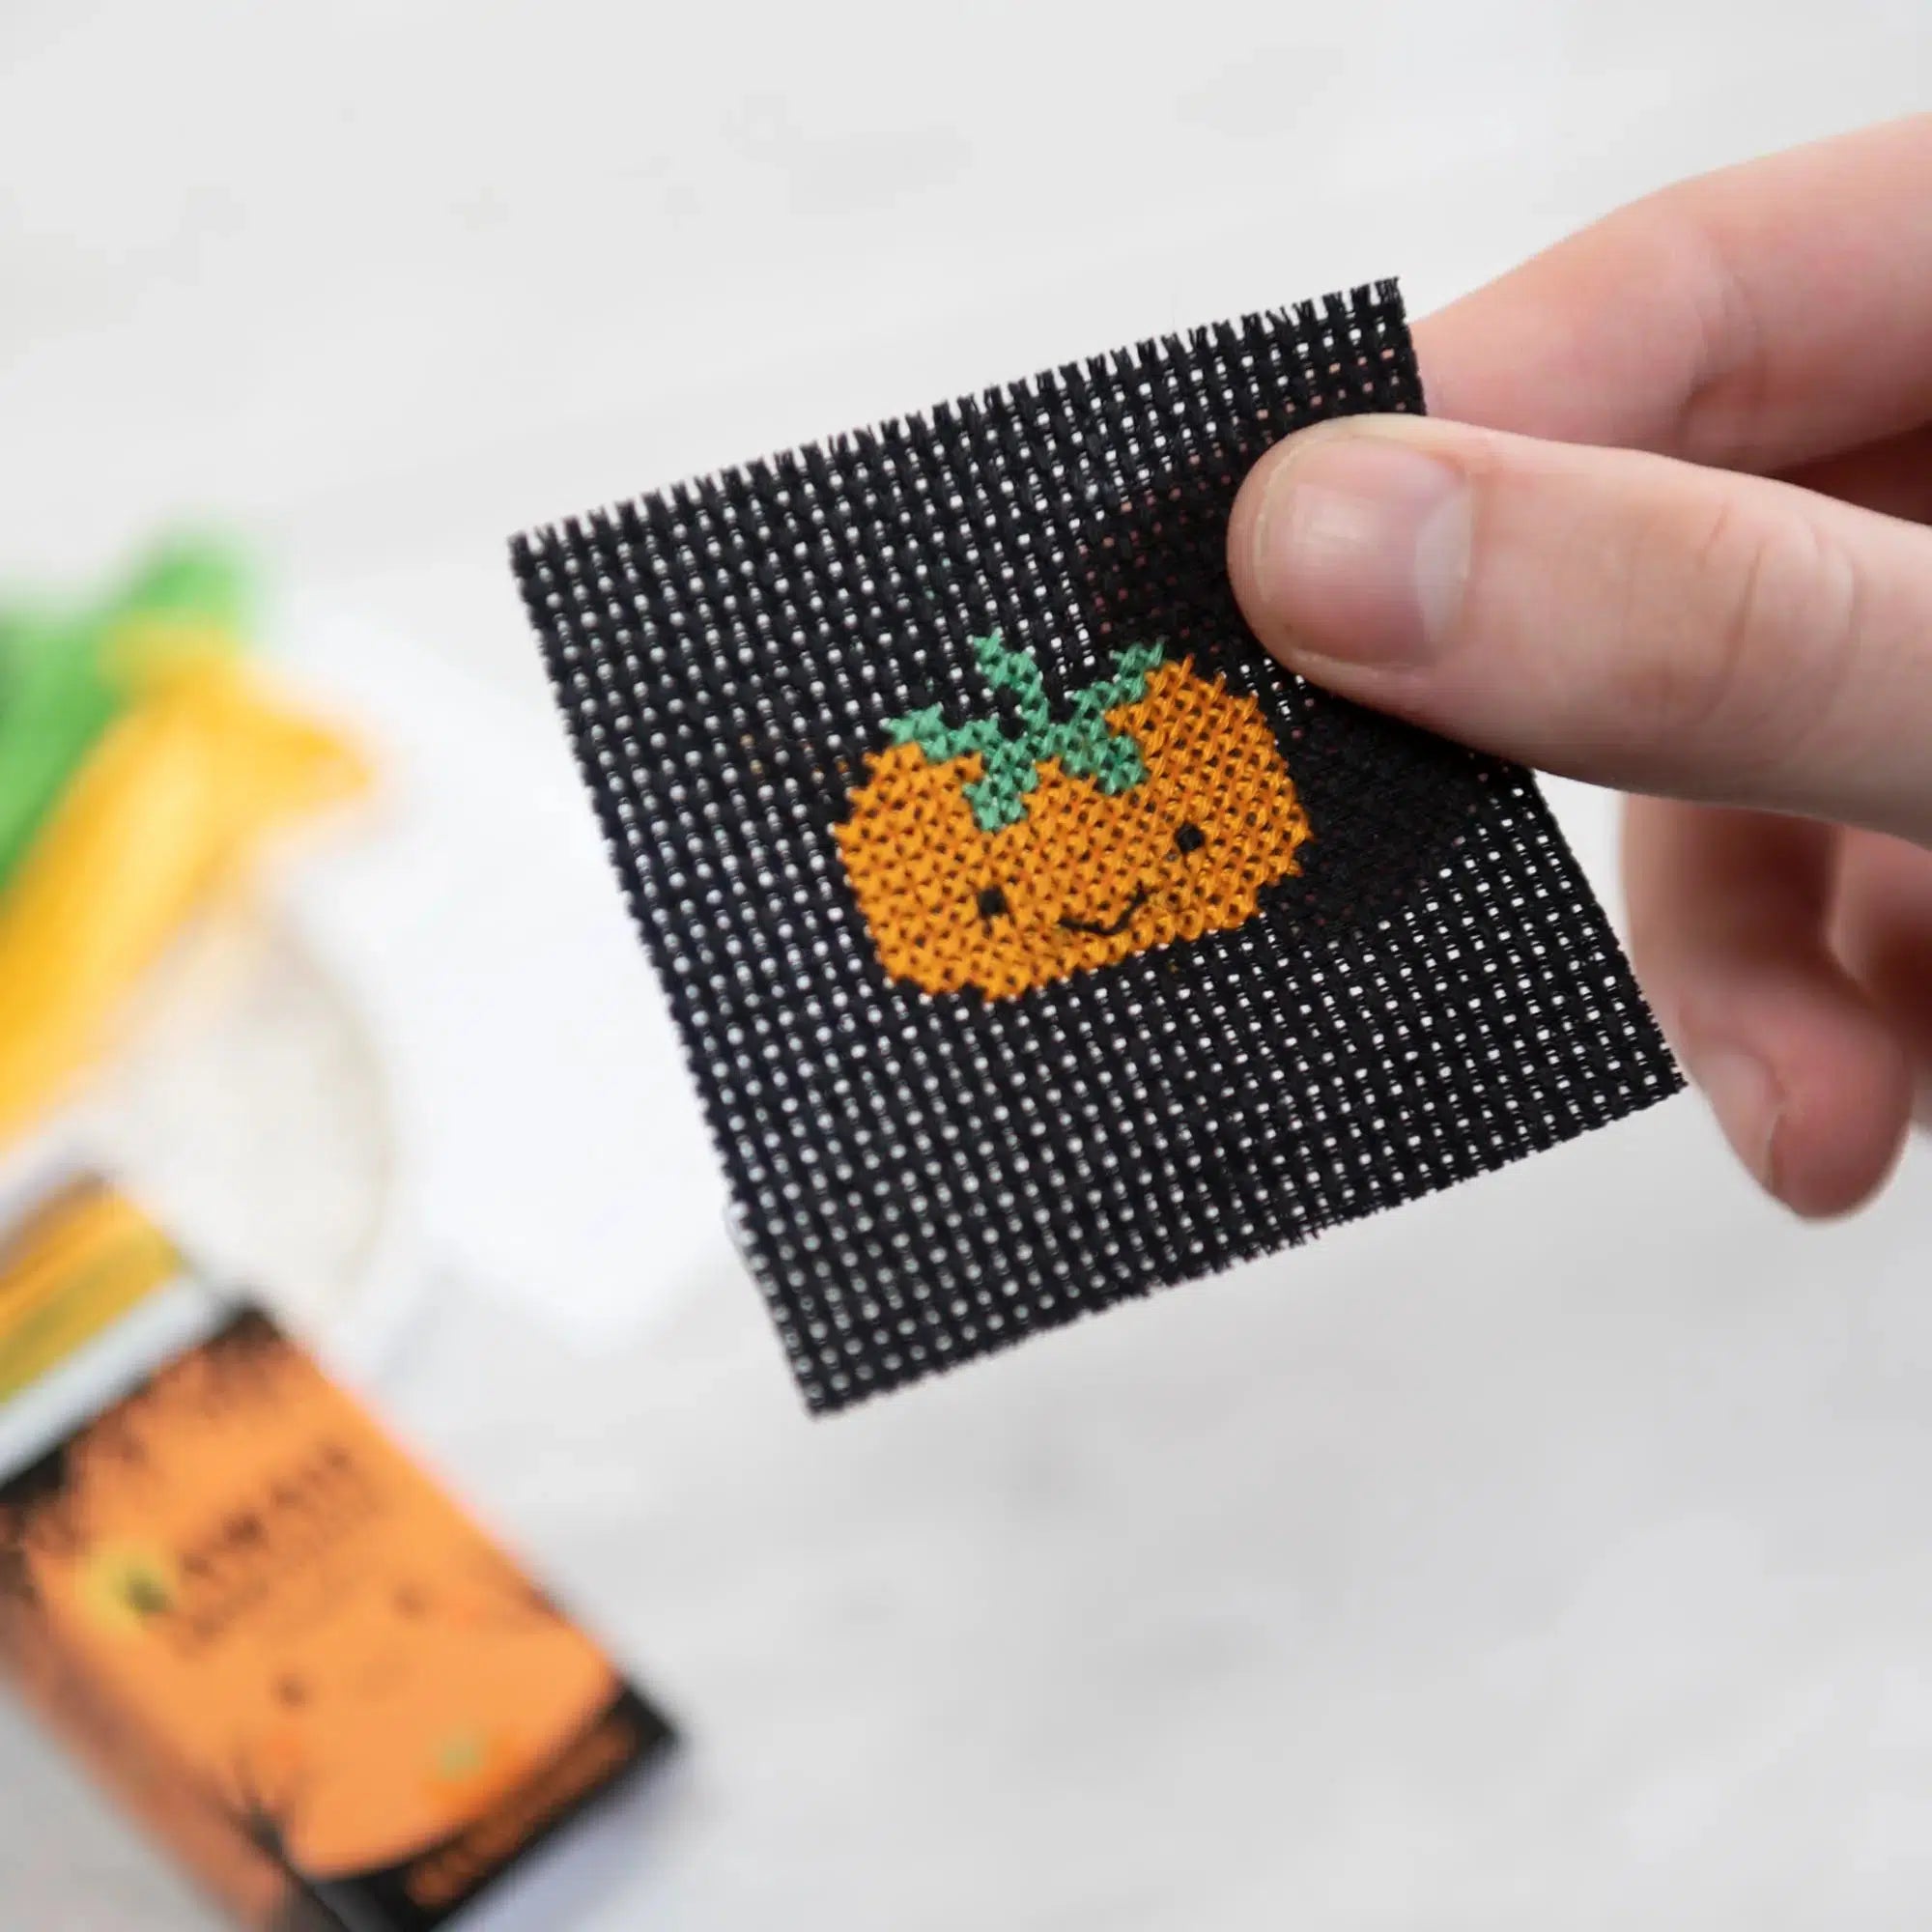 Marvling Bros-Kawaii Halloween Pumpkin Mini Cross Stitch Kit in a Matchbox-xstitch kit-gather here online